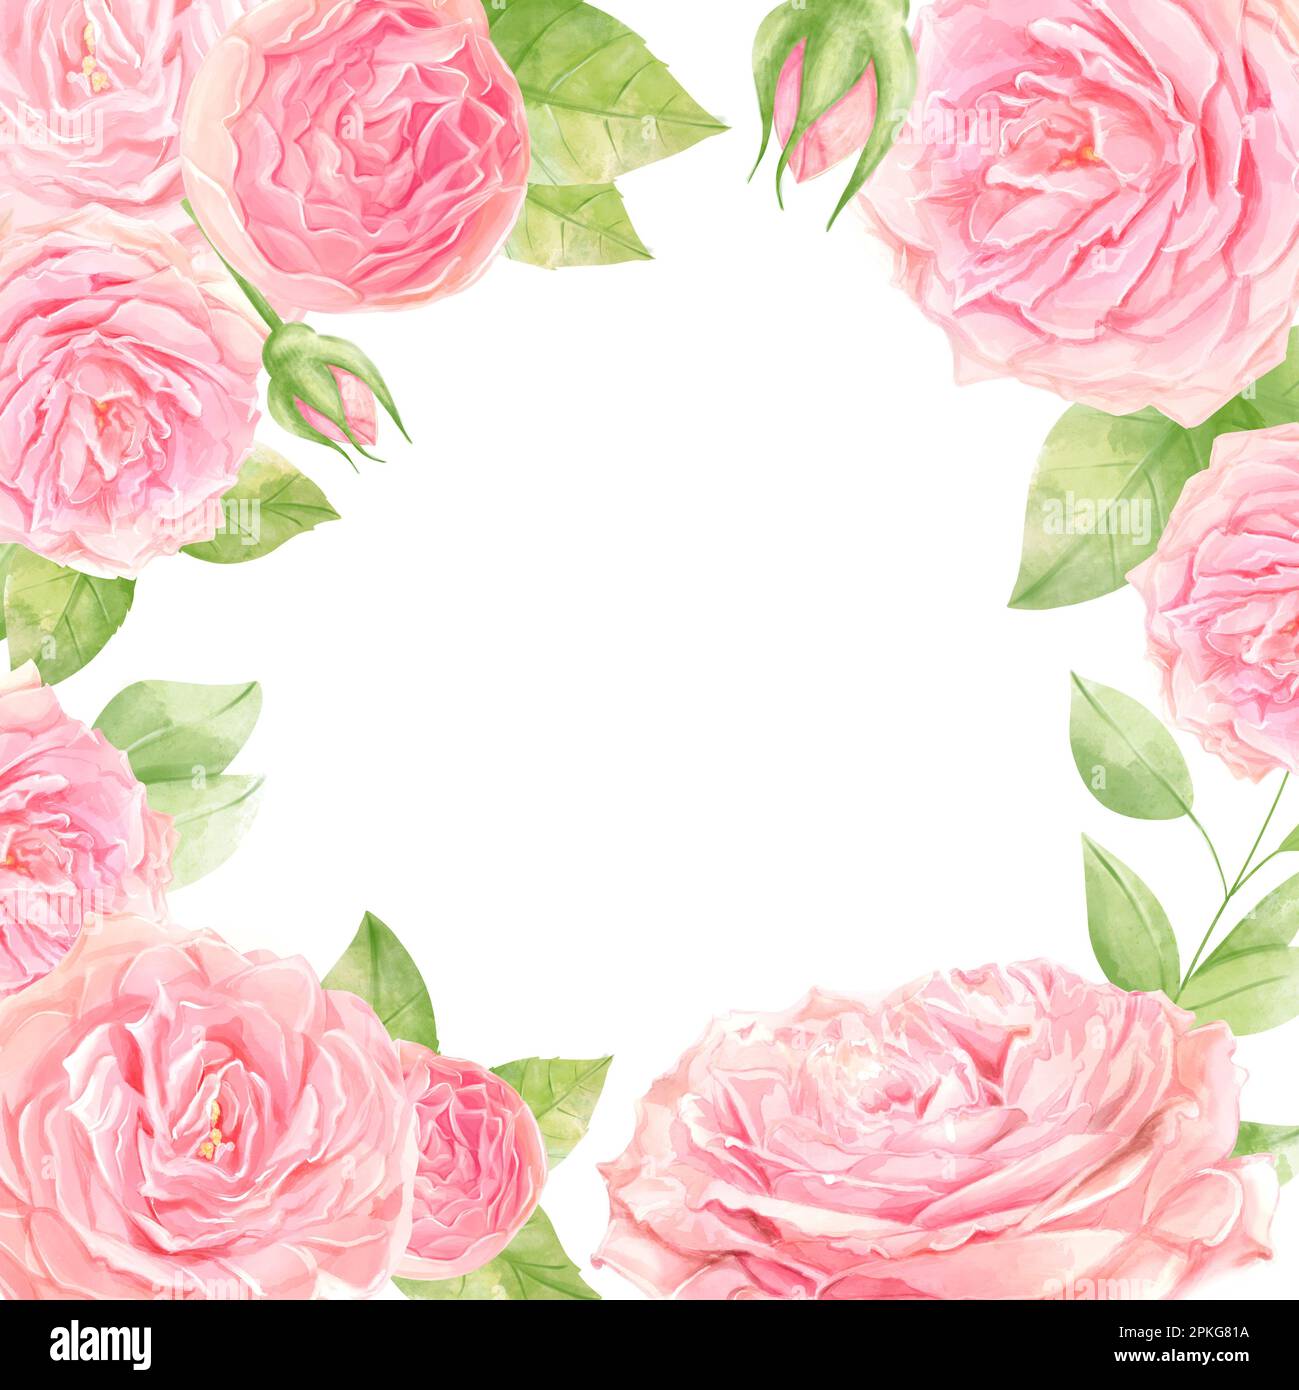 Motif d'invitation de mariage aquarelle avec rose. Fleurs sauvages, arrière-plan avec des souvenirs floraux pour le texte, arrière-plan aquarelle. Exemple de cadre. Banque D'Images